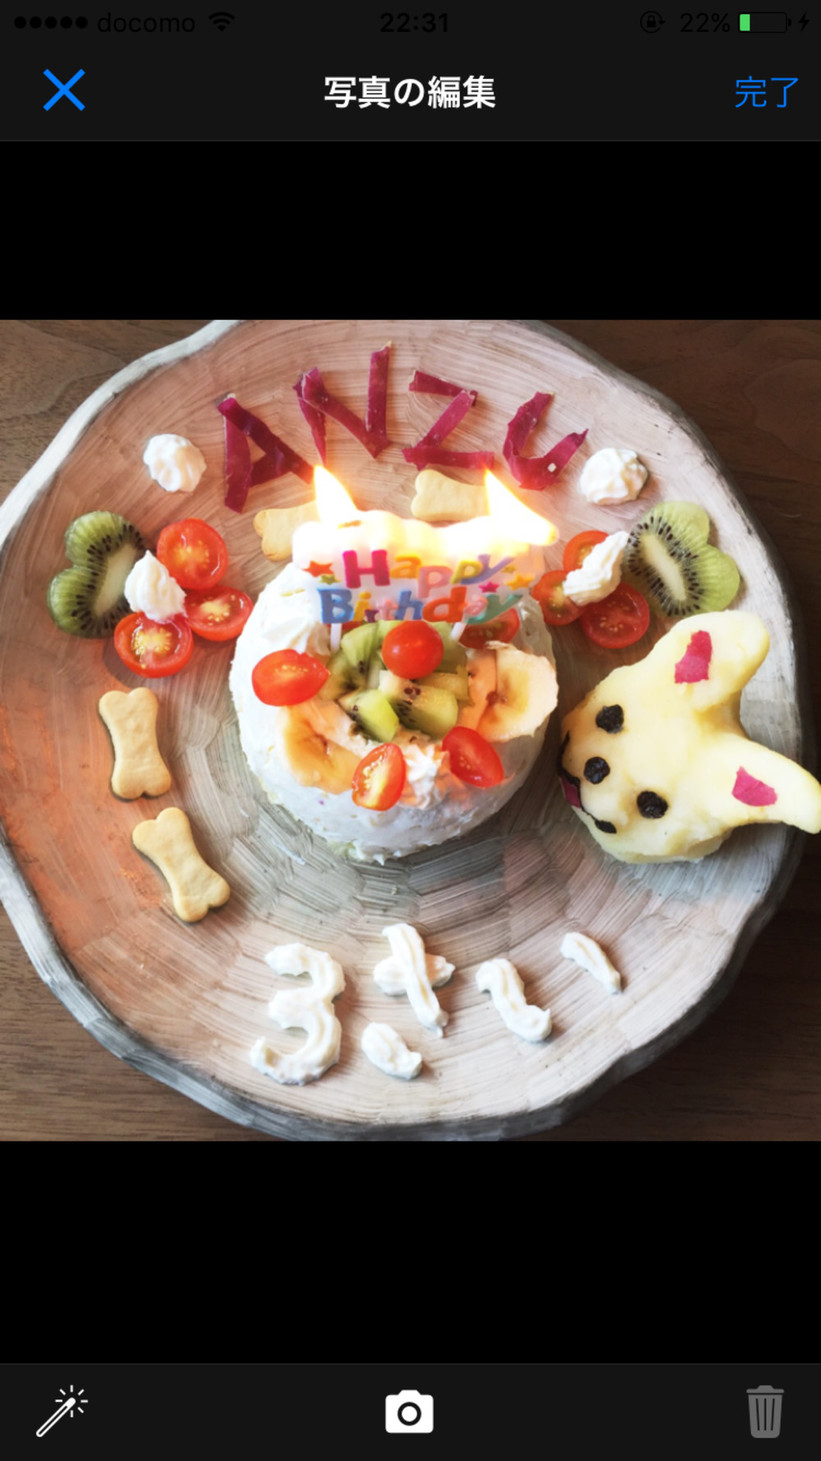 さつまいもを使った犬の誕生日ケーキの画像